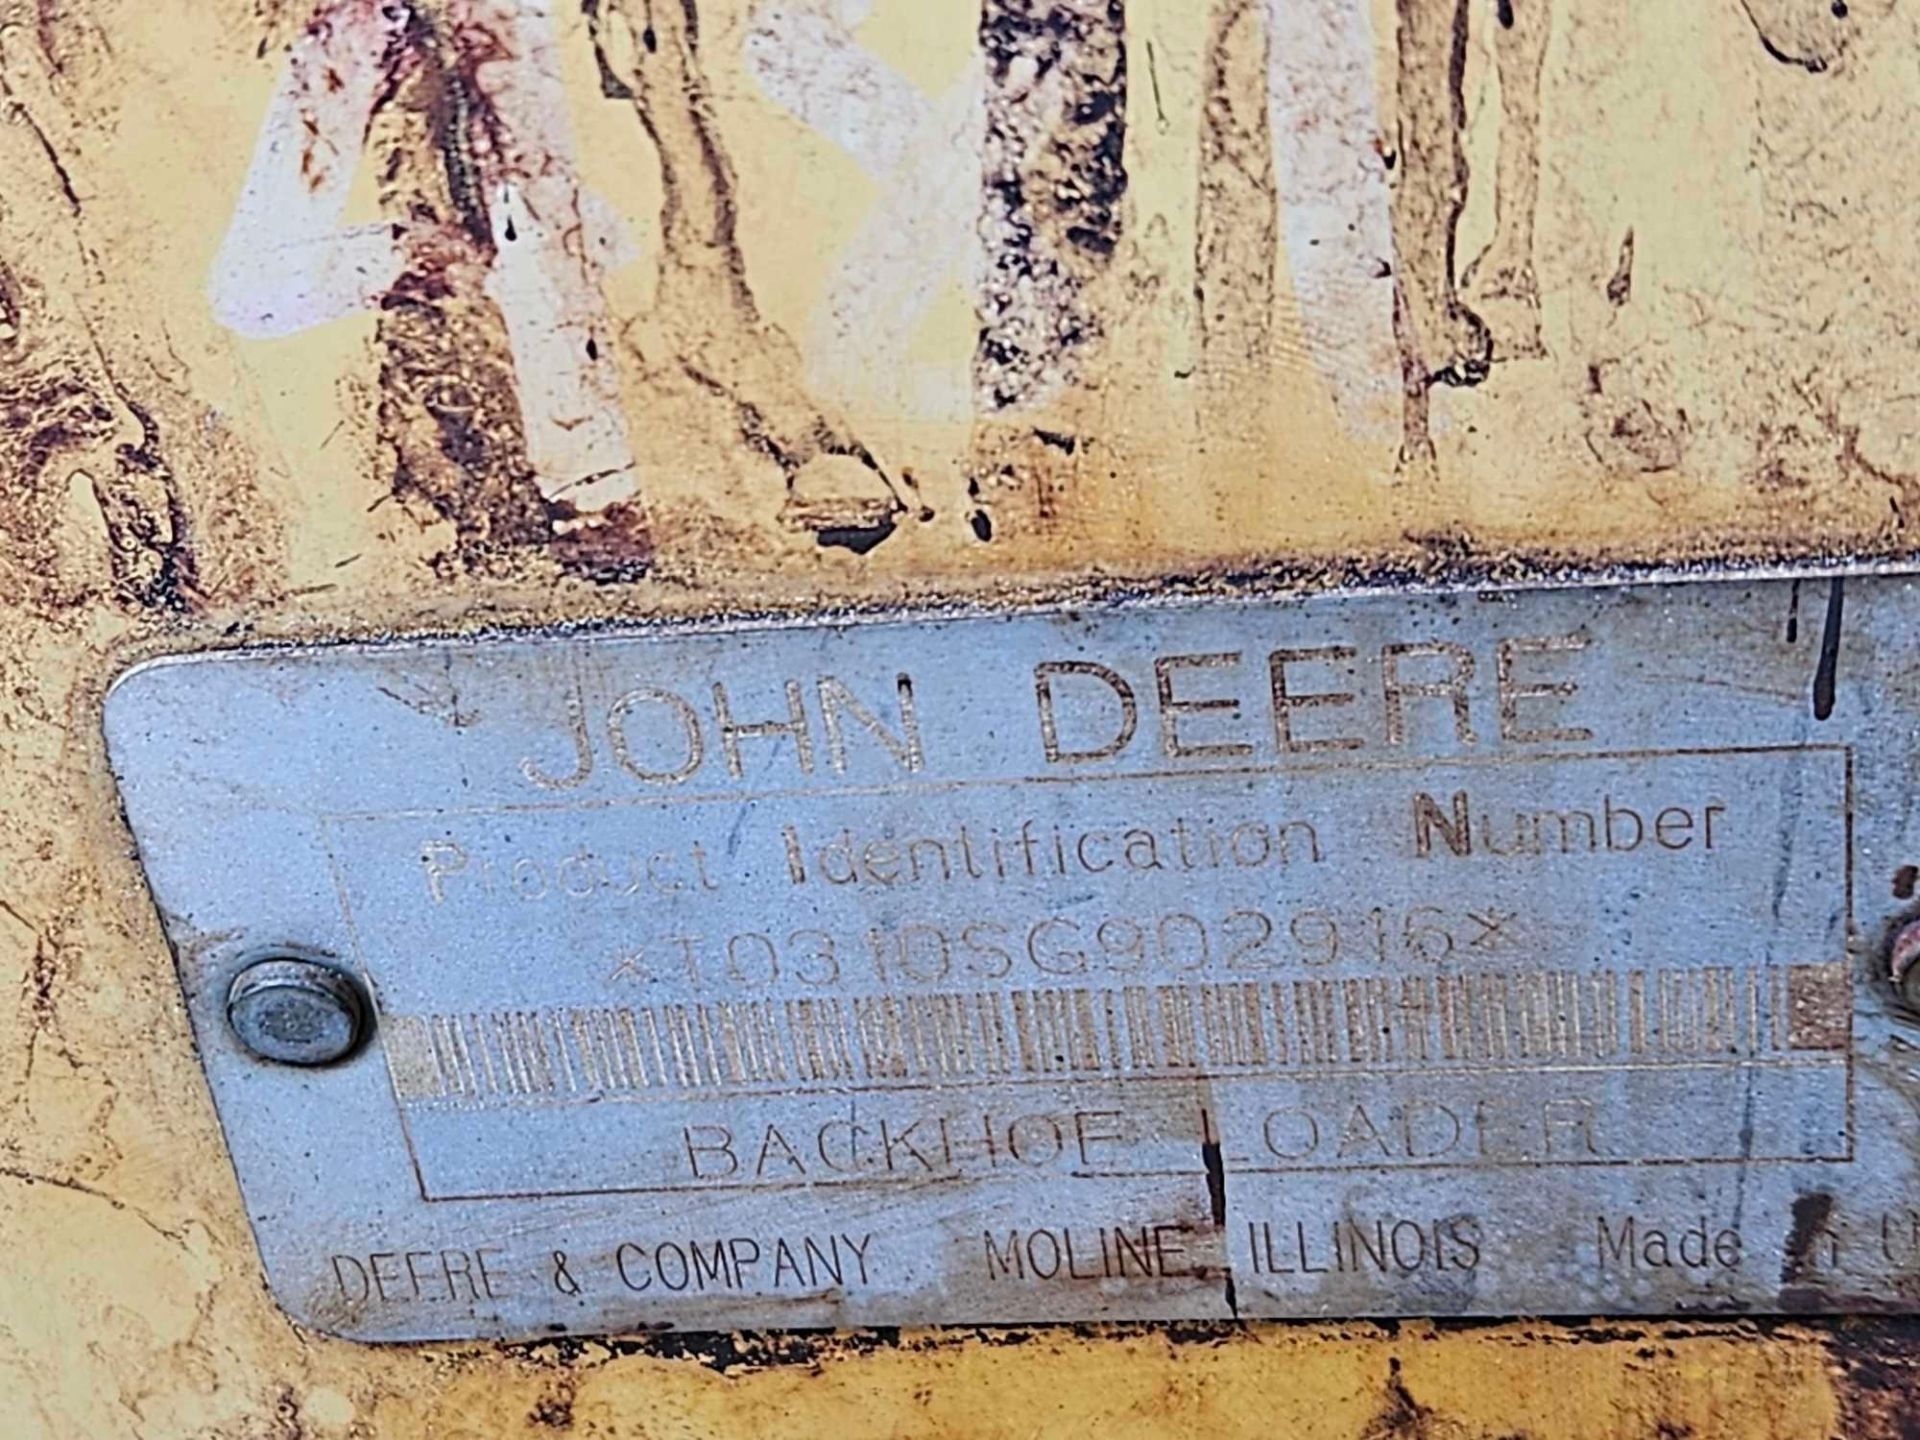 John Deere Backhoe & Loader - Image 5 of 7